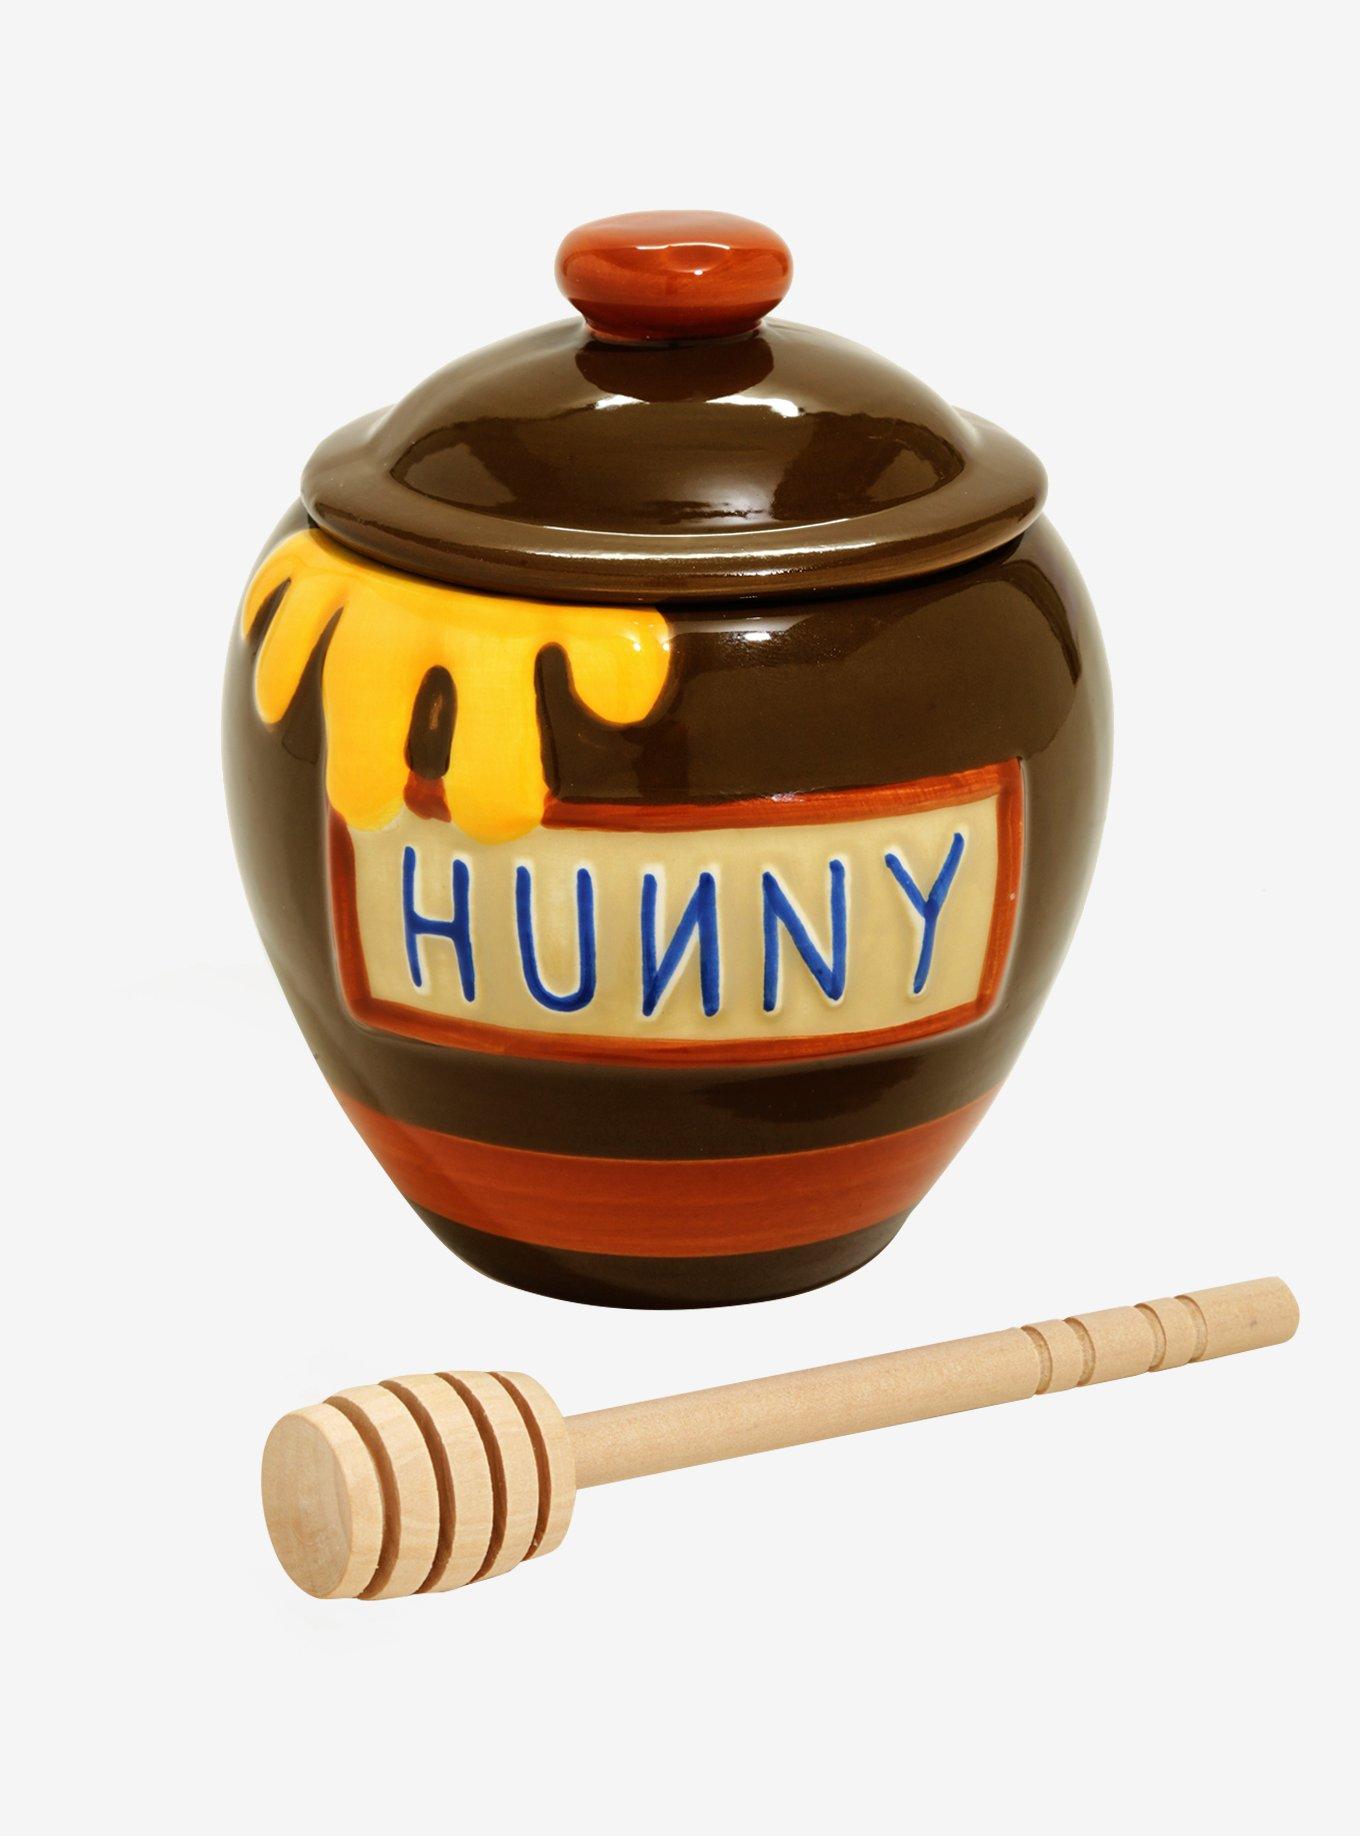 Pooh's Hunny Pots de Crème Recipe - D23